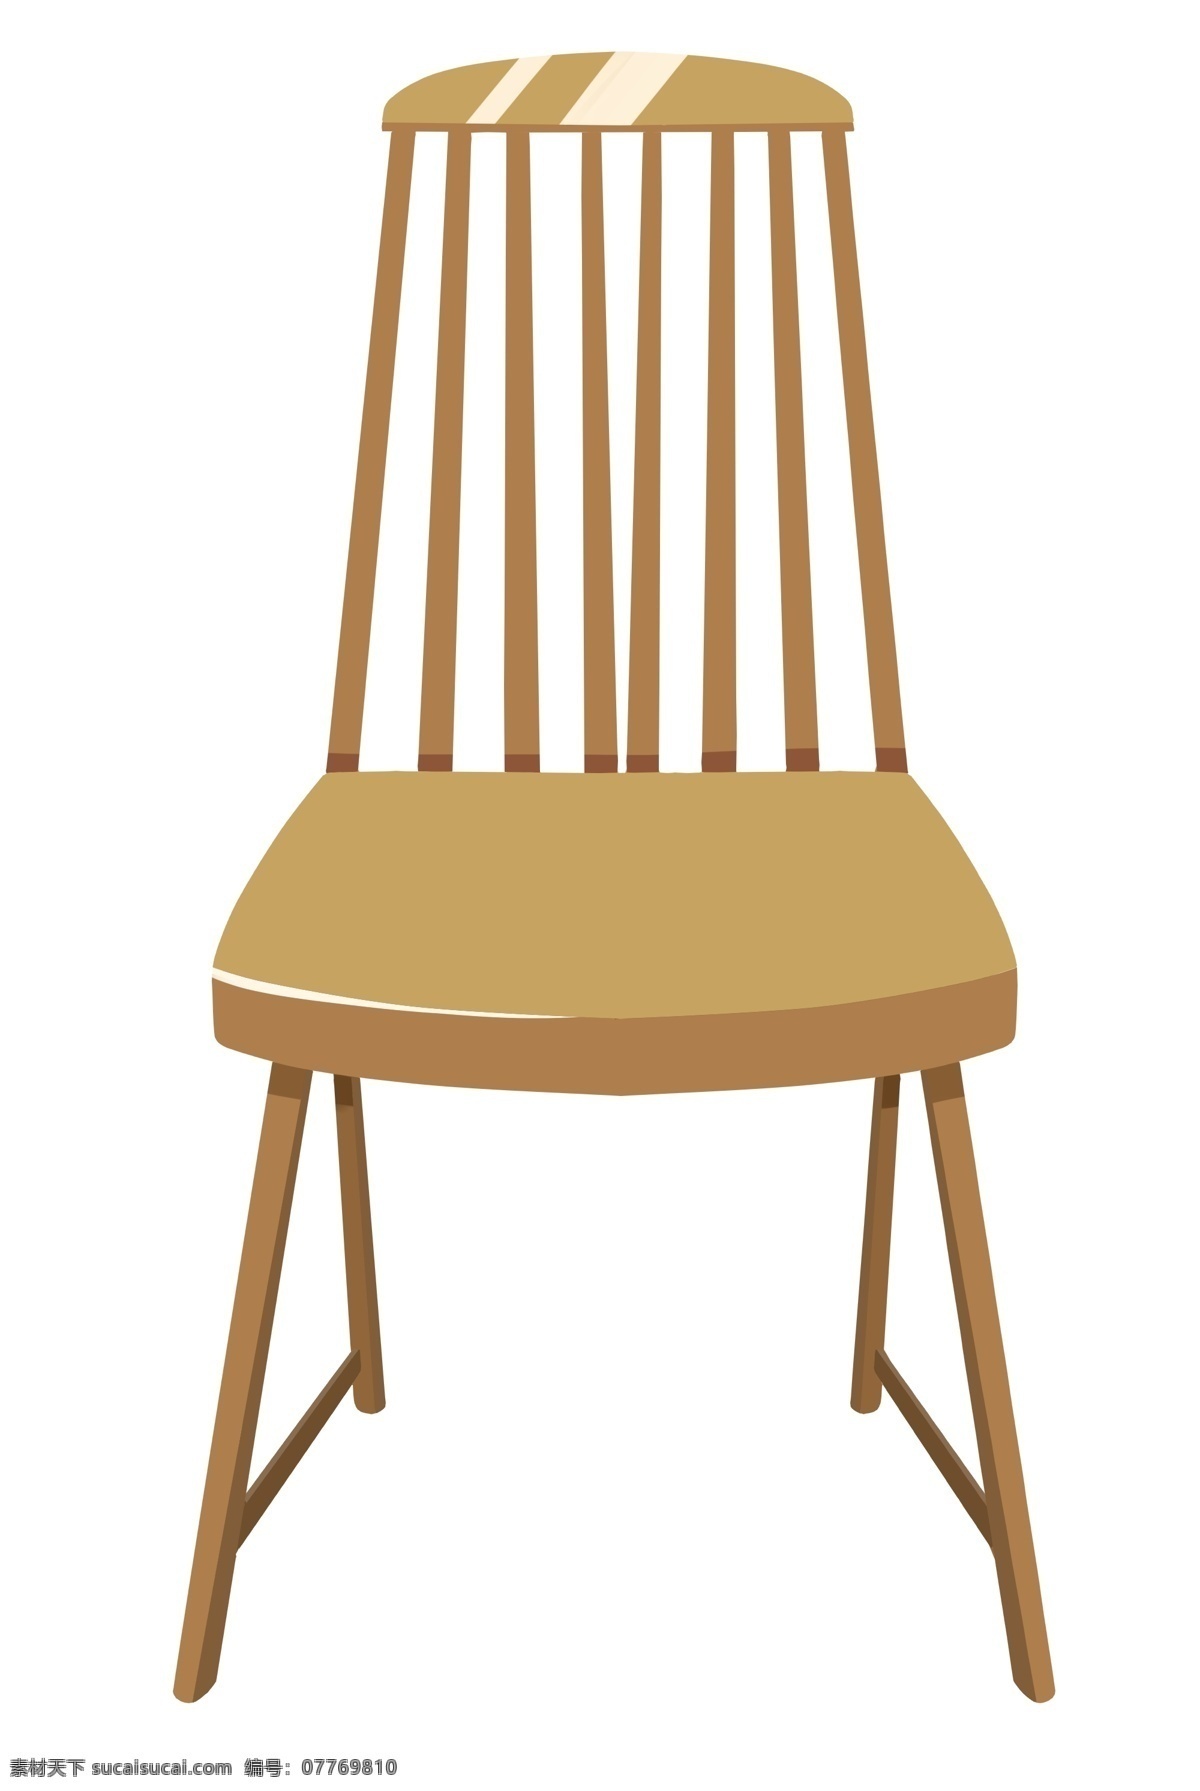 实木家具 椅子 插画 黄色的椅子 卡通插画 椅子插画 家具插画 家具椅子 木质椅子 木纹的椅子